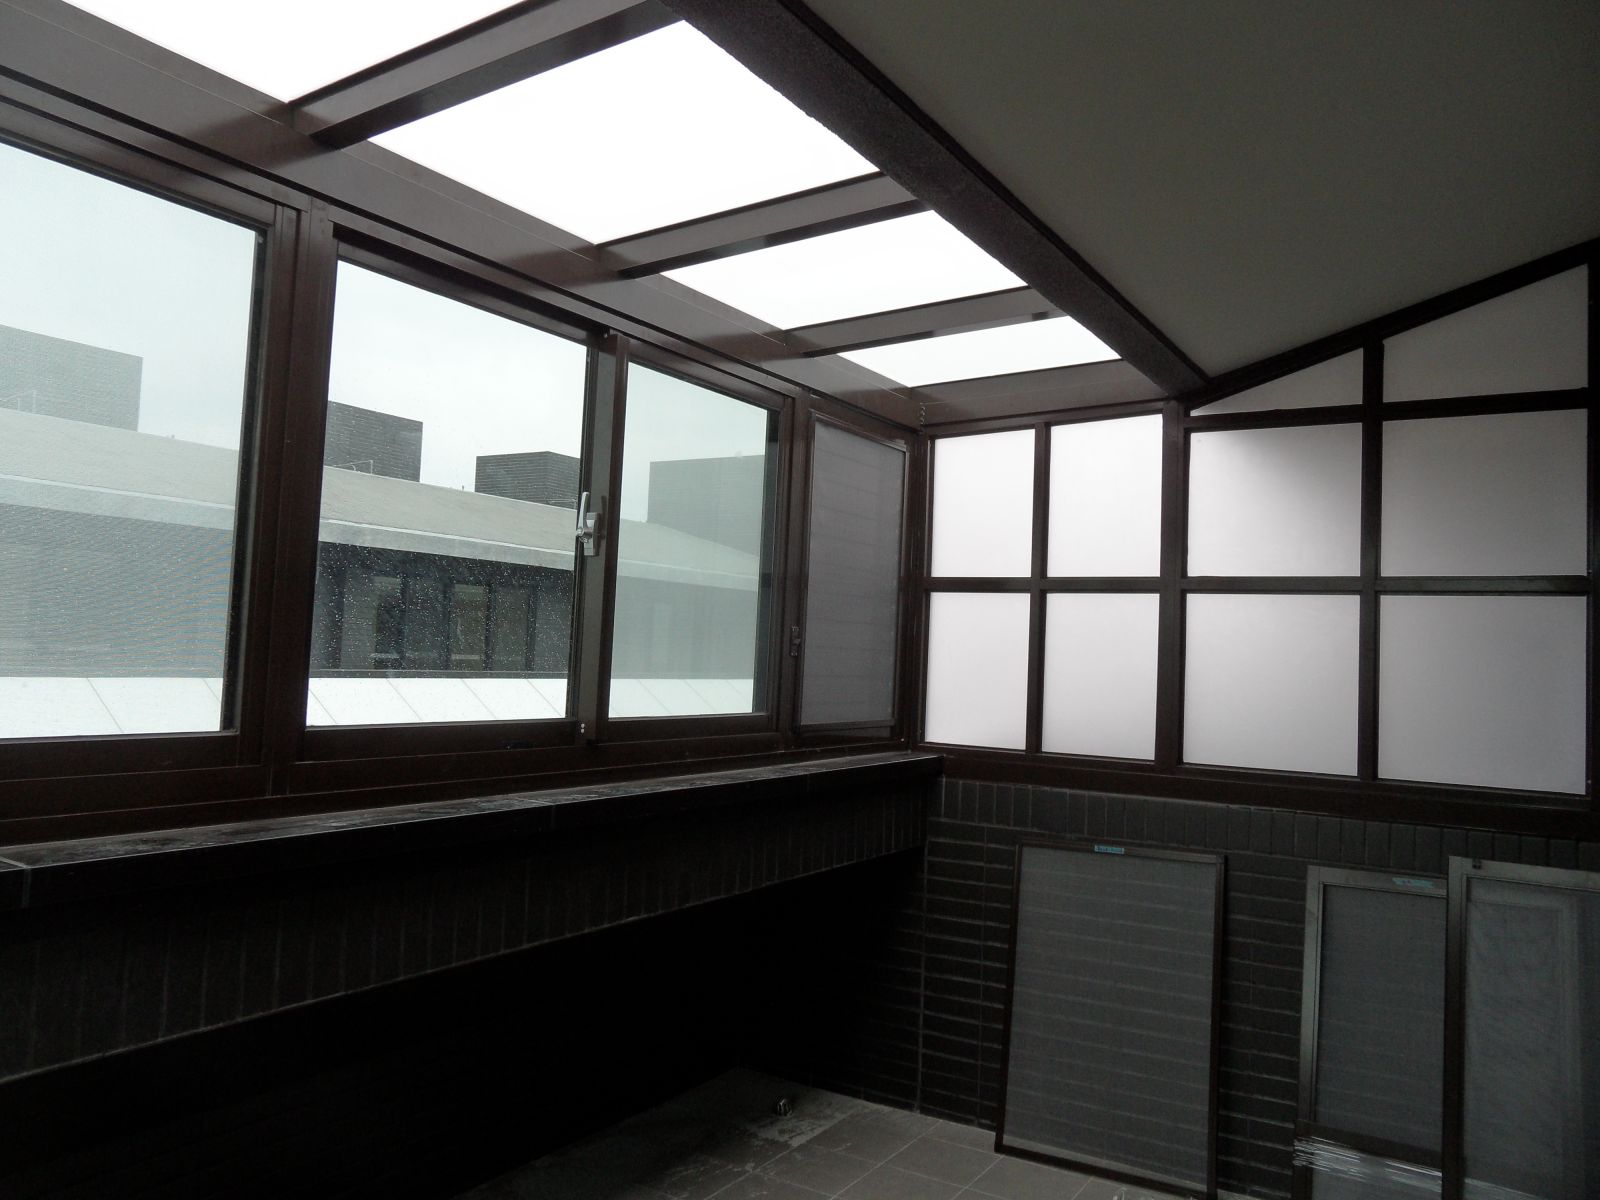 屋頂採用5+5膠合白膜玻璃,正面採用高級氣密窗8mm綠色強化玻璃搭配2組活動百葉窗